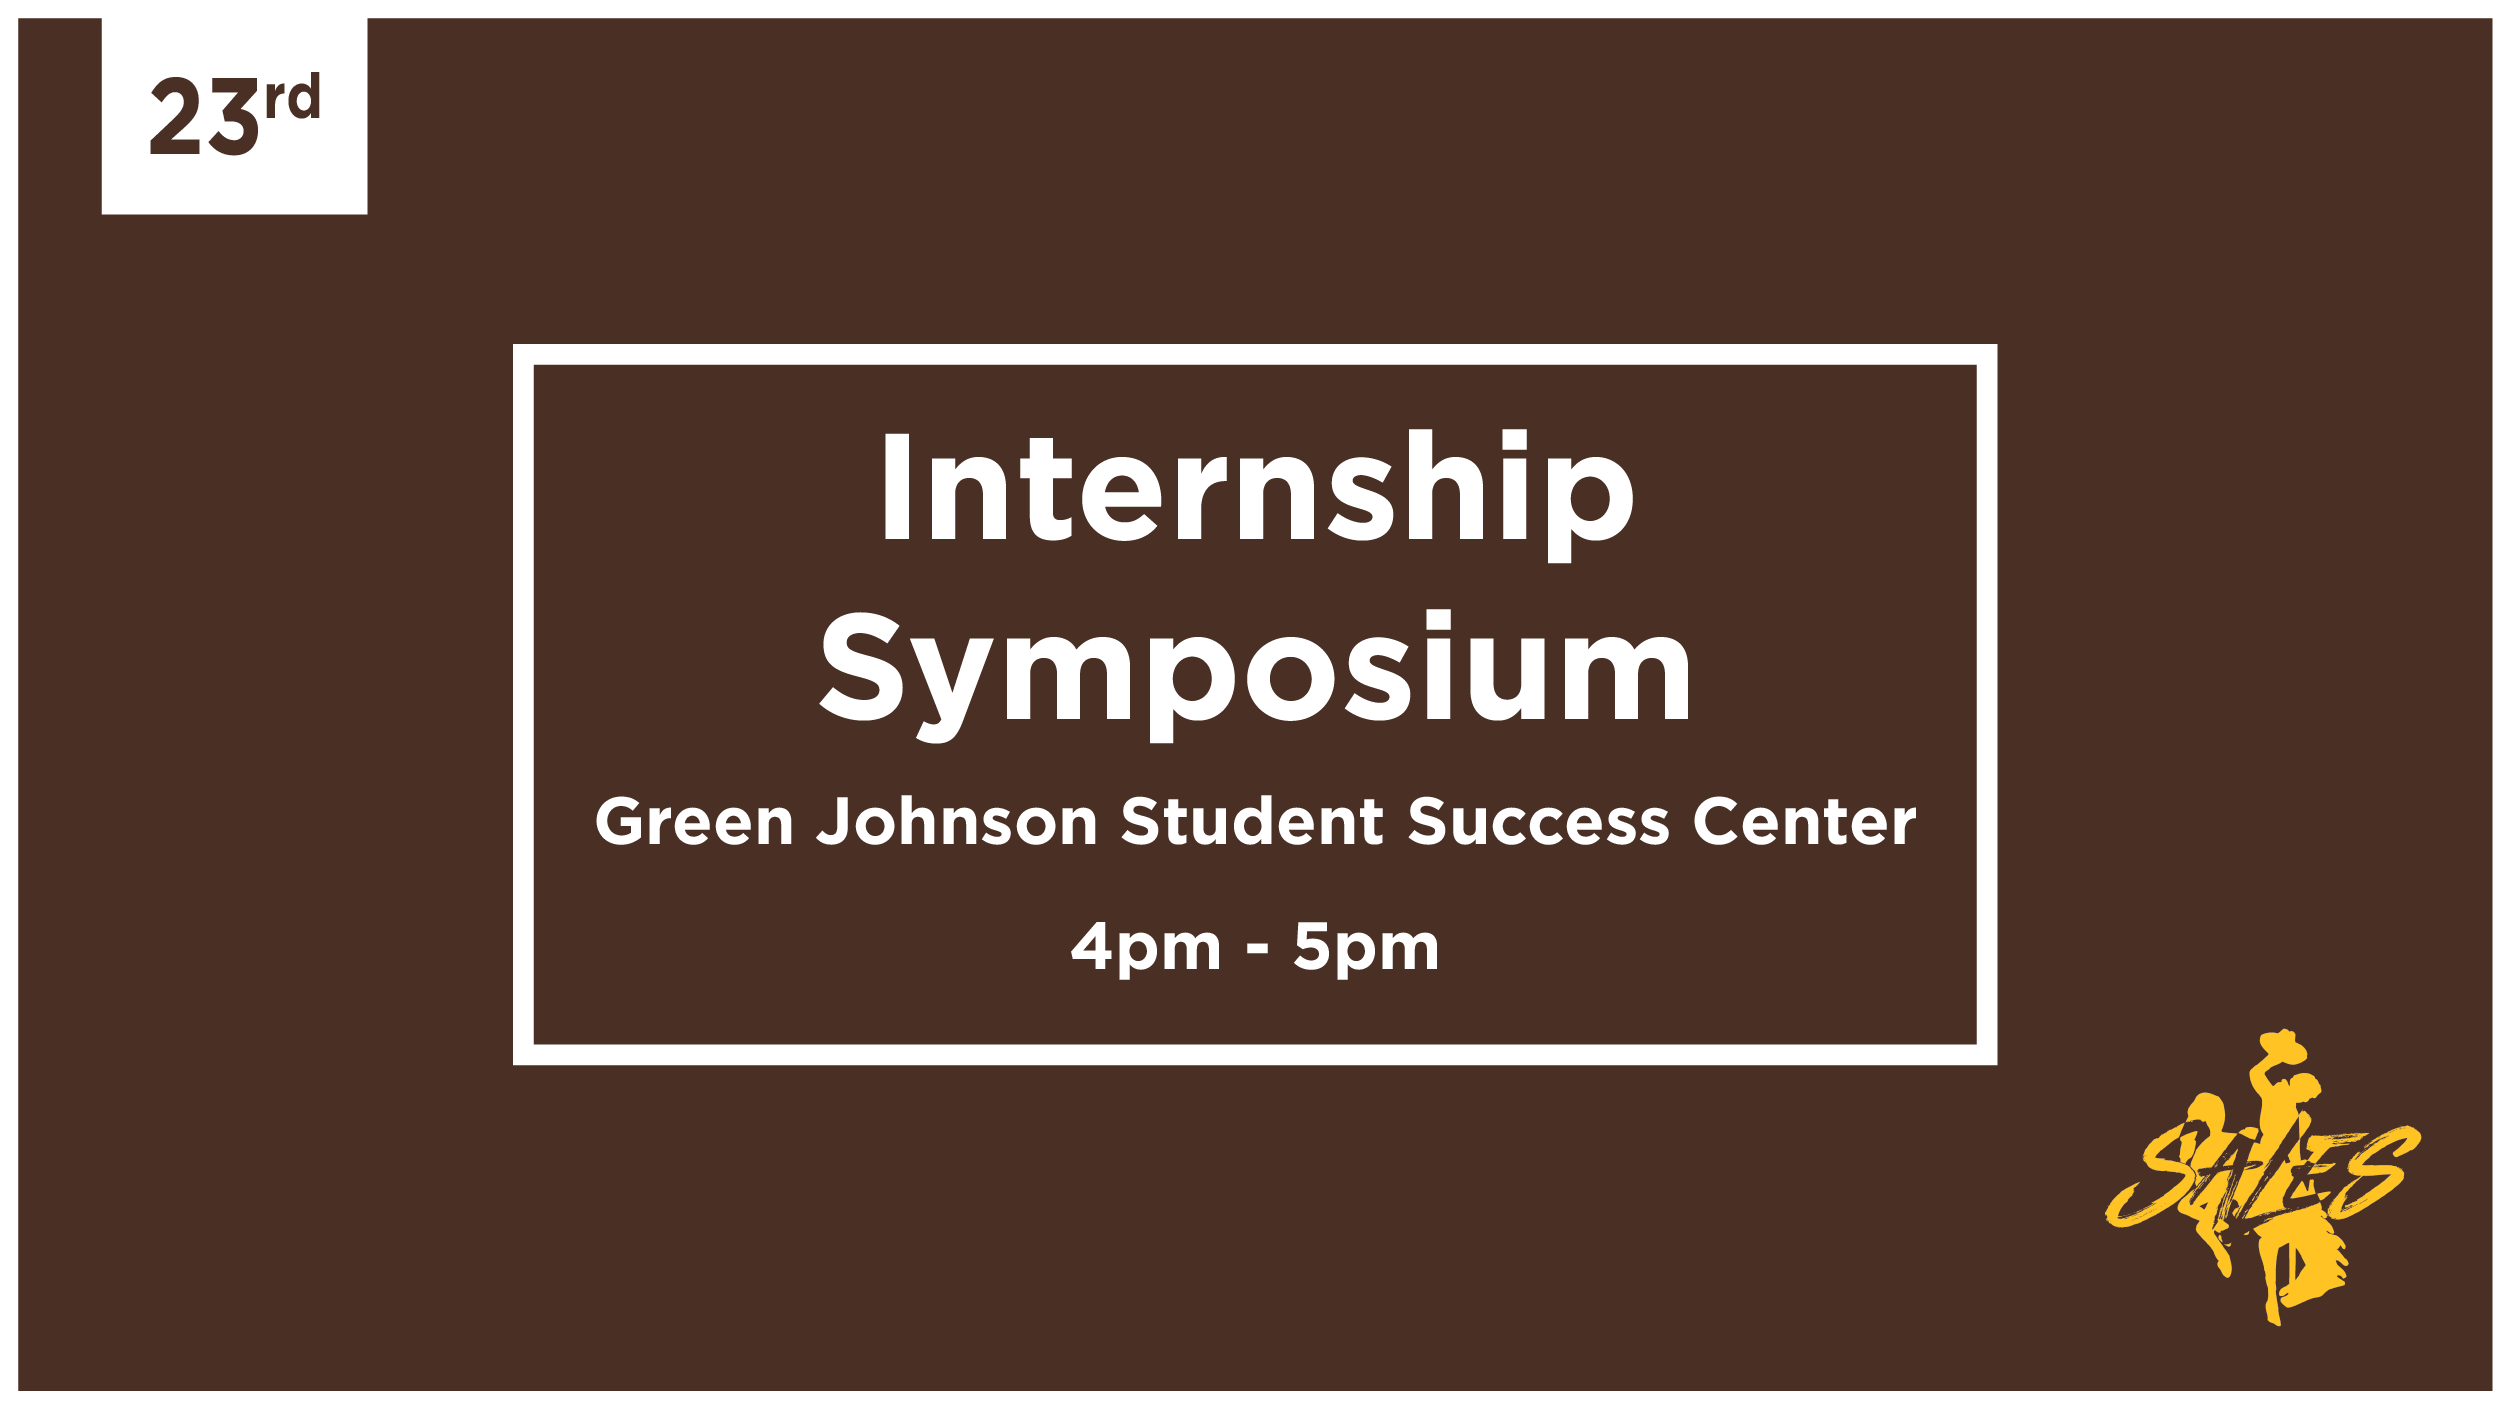 Internship Symposium September 23rd